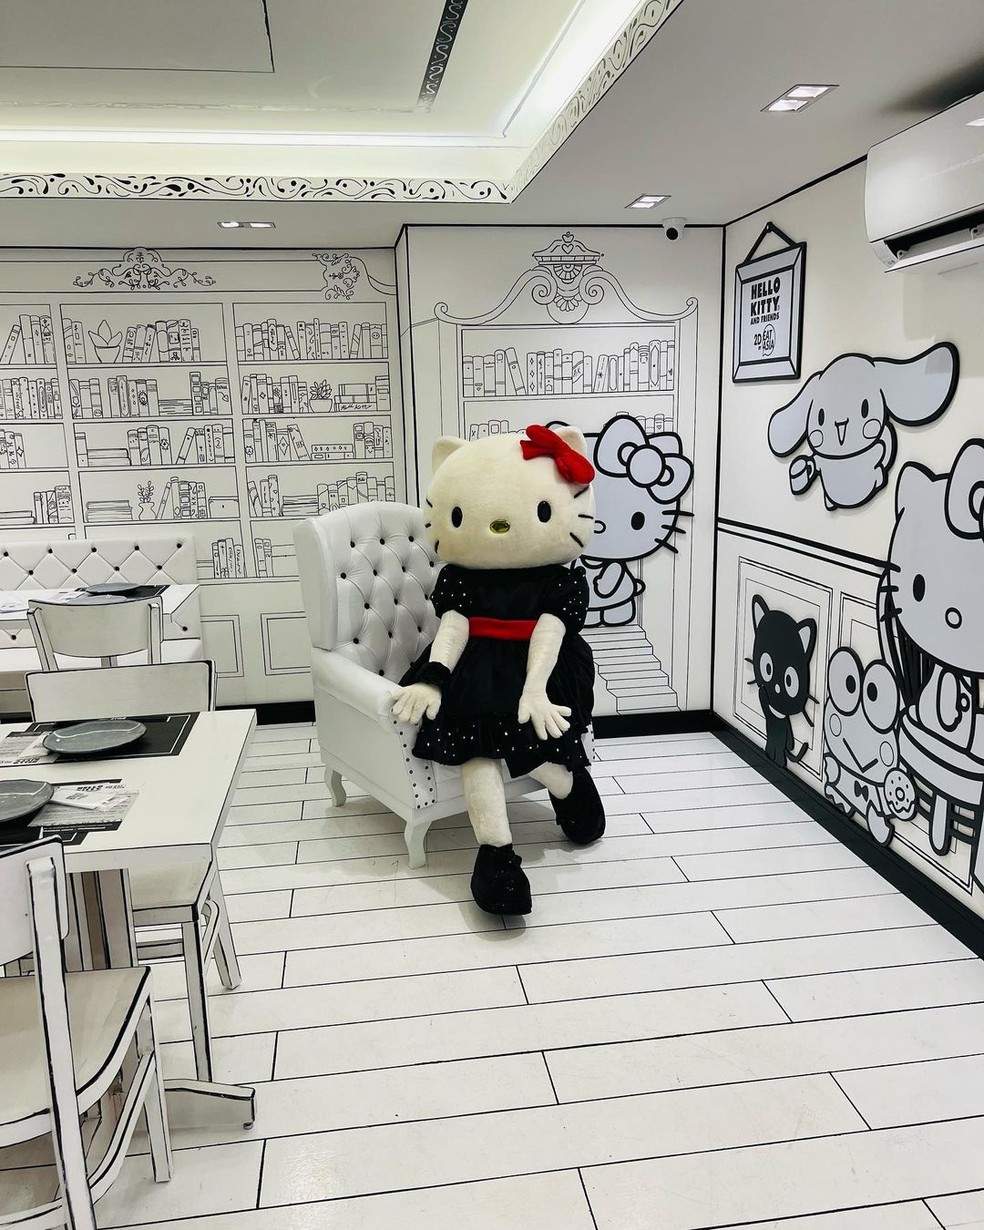  [Gaveta] O primeiro restaurante preto e branco 2D da Hello Kitty é sucesso na Liberdade, em São Paulo, com comidas temáticas e ambiente decorado — Foto: Instagram